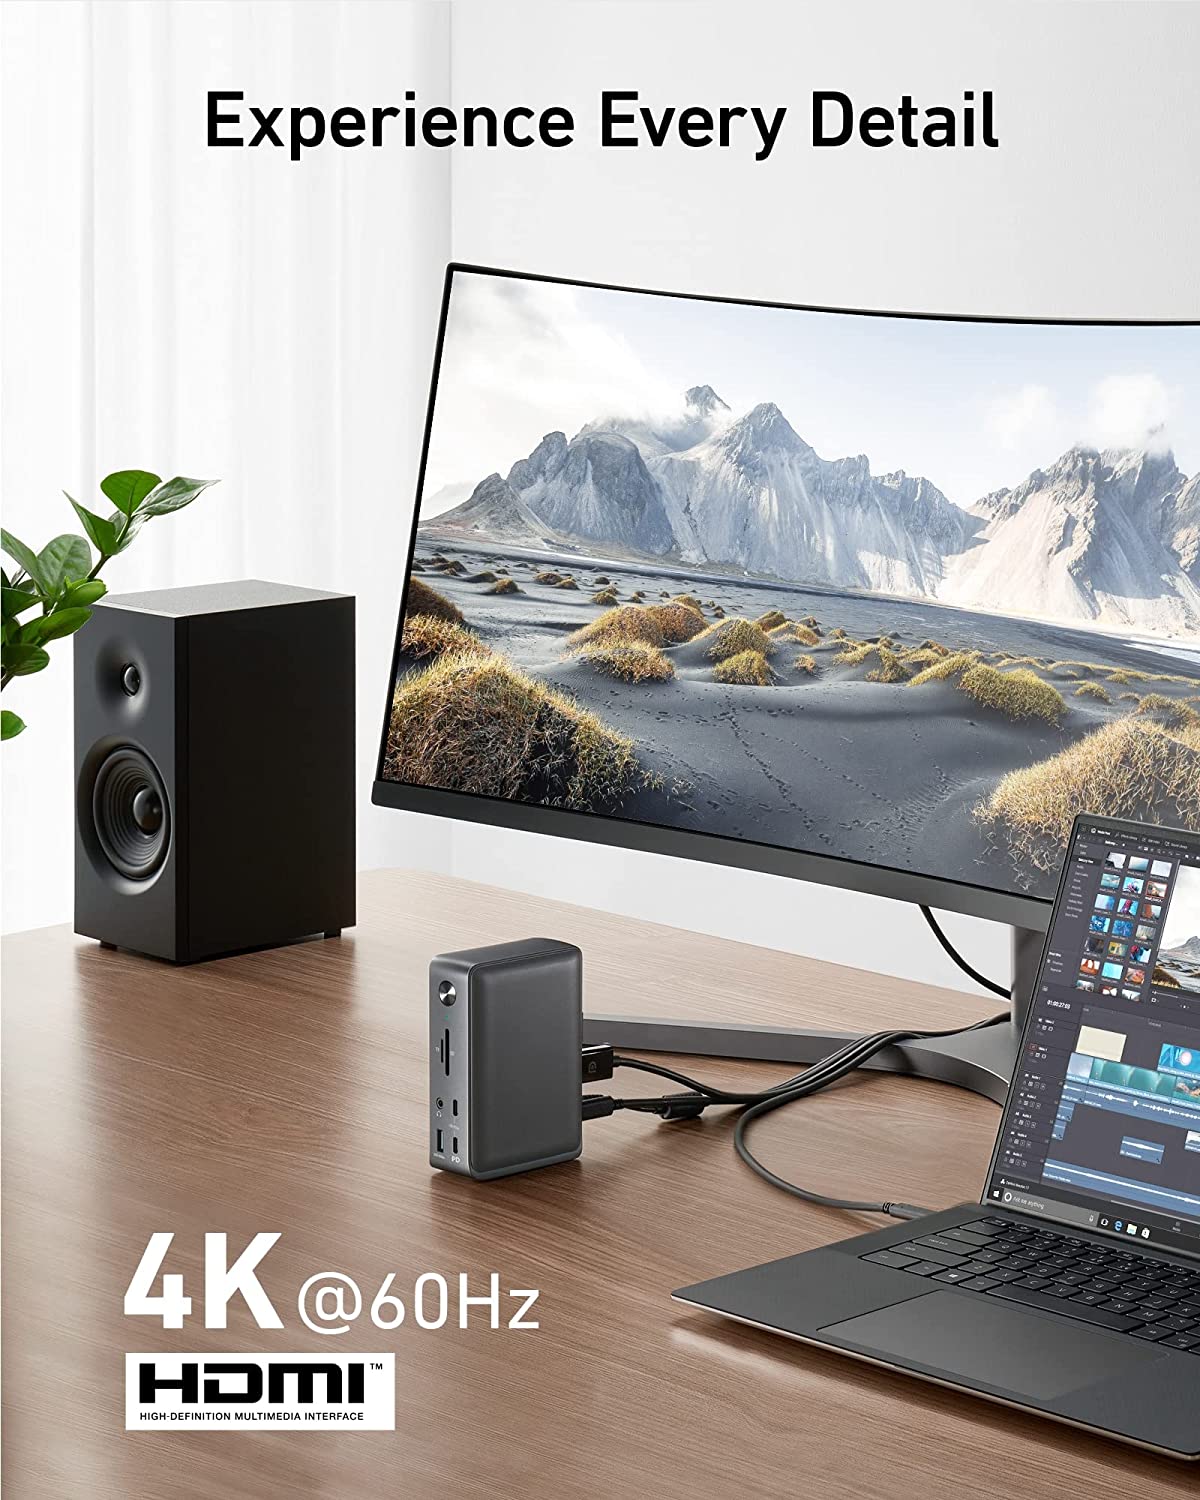 Station d'accueil Anker, station d'accueil USB-C 13 en 1 PowerExpand, charge 85 W pour ordinateur portable, charge 18 W pour téléphone, HDMI 4K, Ethernet 1 Gbit/s, audio, USB-A Gen 1, USB-C Gen 2, SD 3.0 (ne t Prise en charge de MST pour macOS)